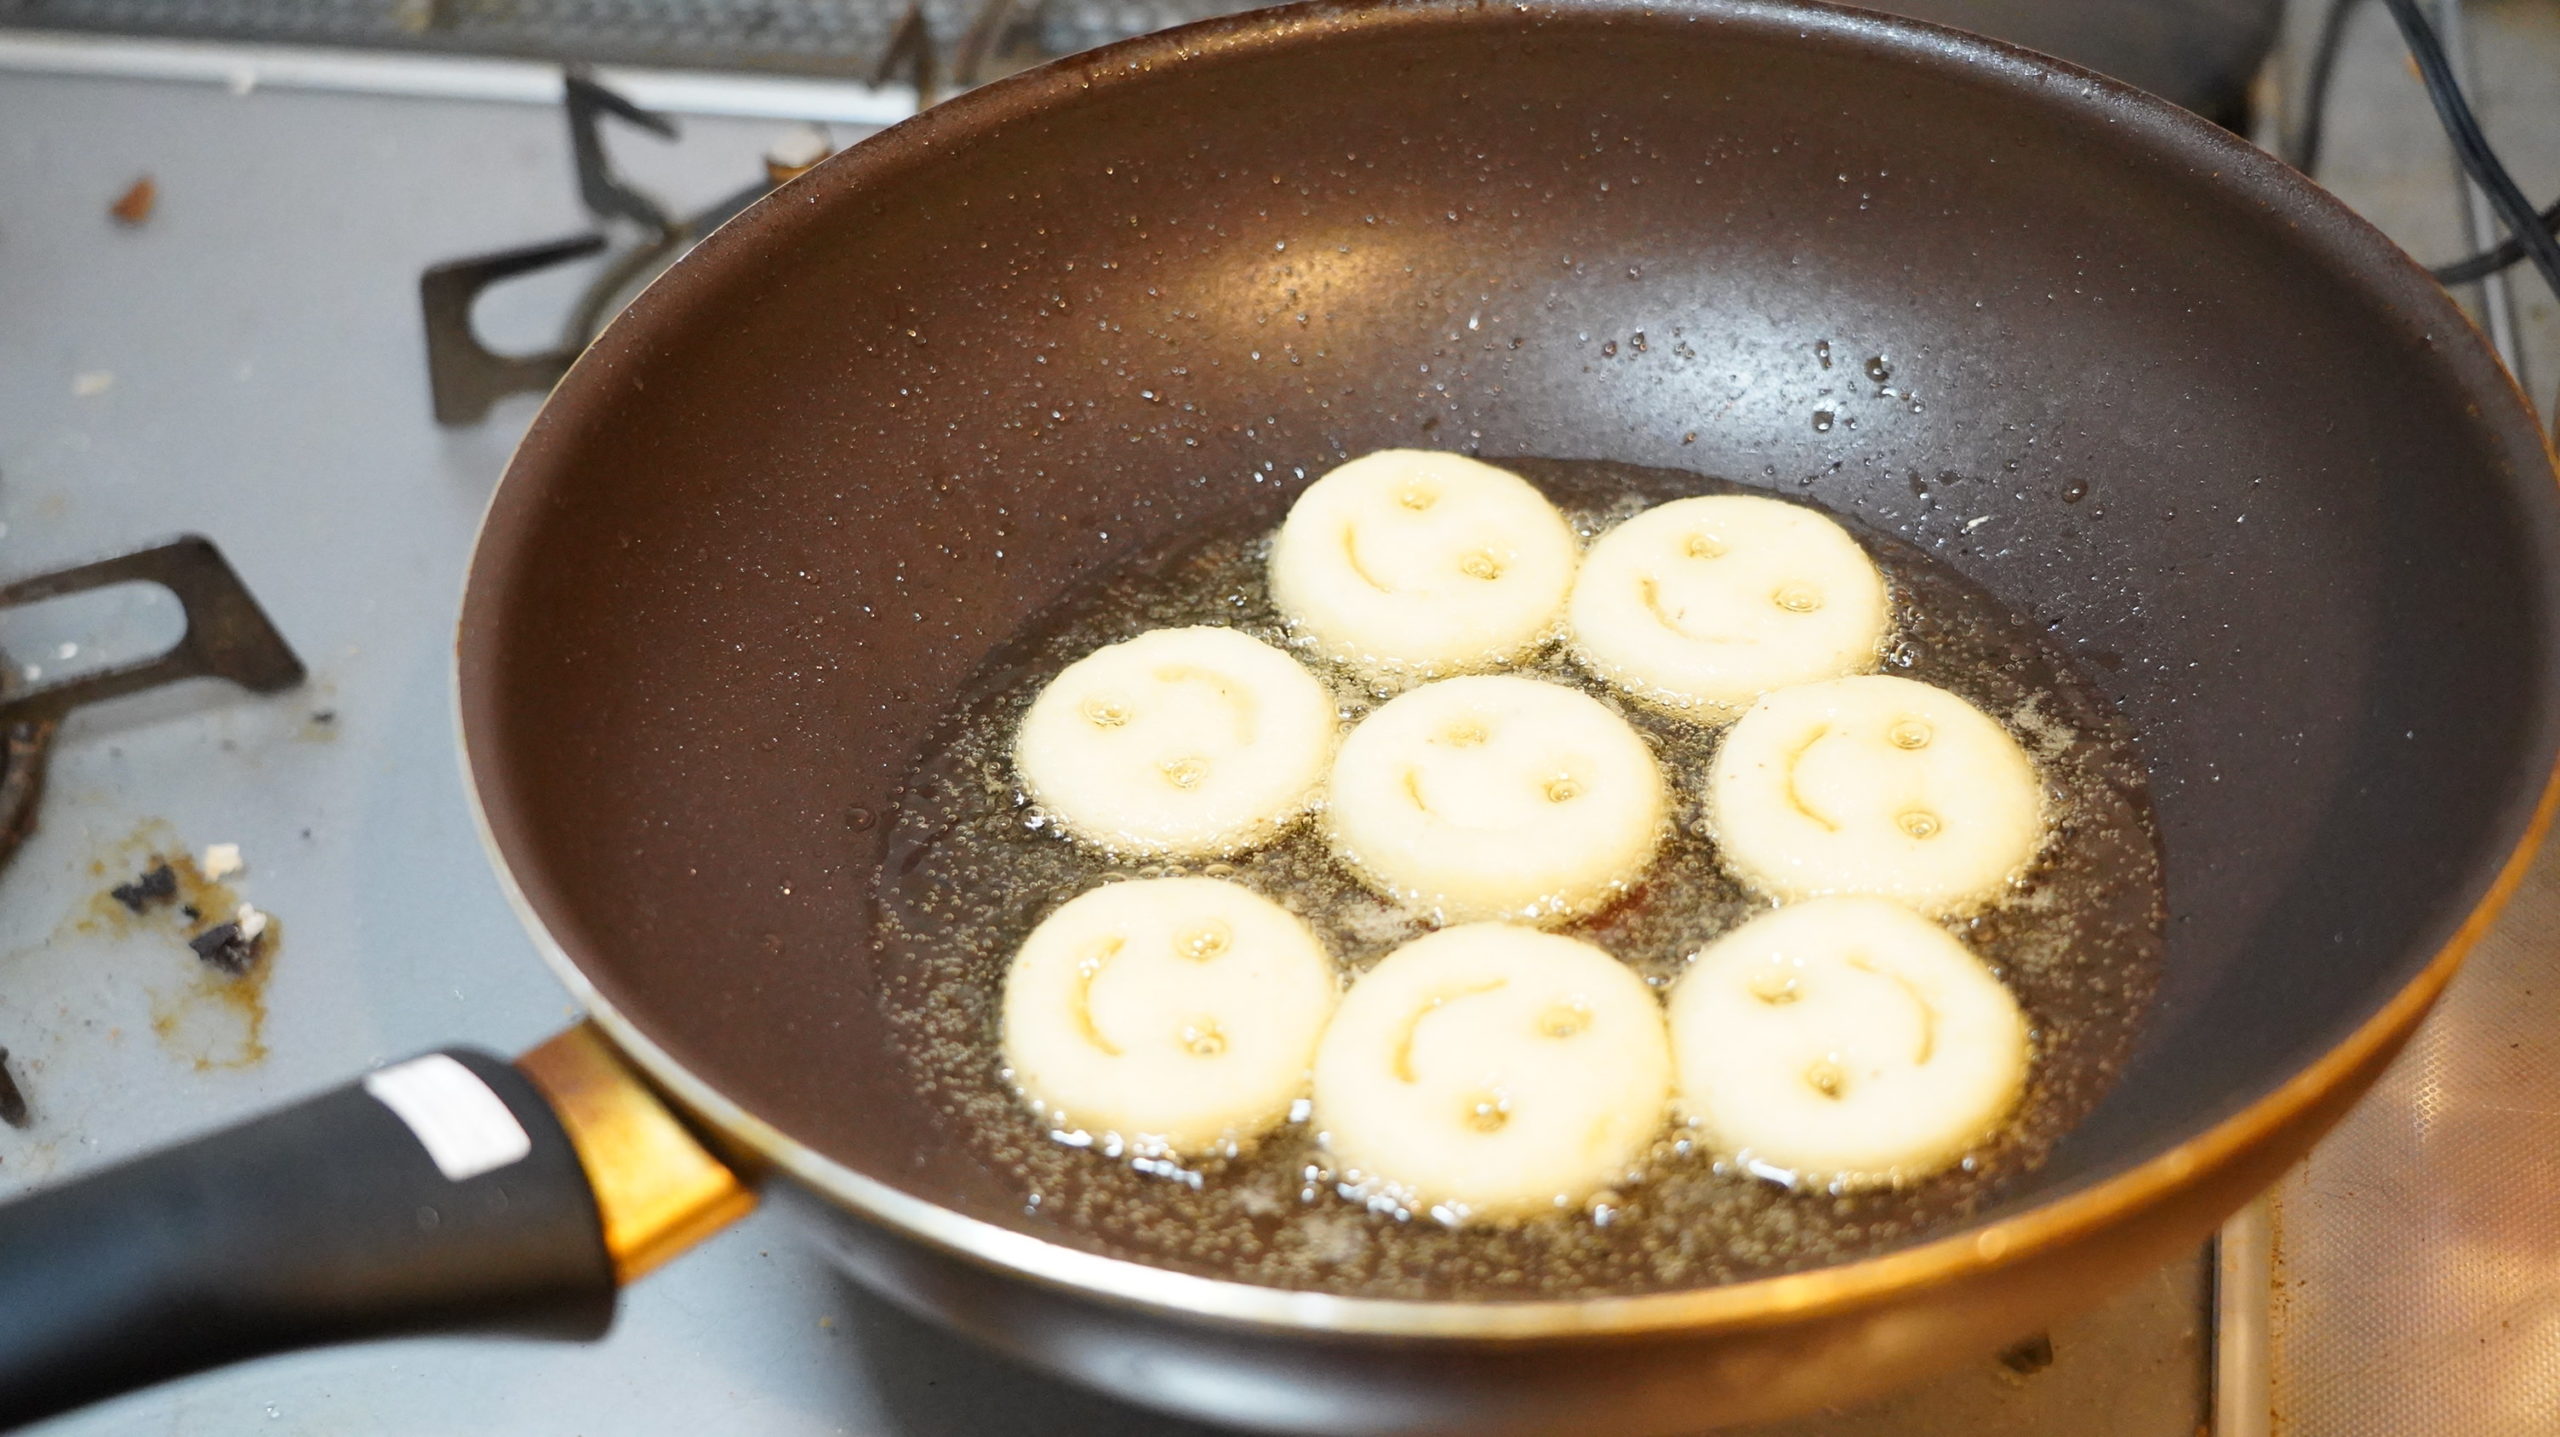 コストコの冷凍食品「マッケイン・スマイルポテト」をフライパンで調理している写真